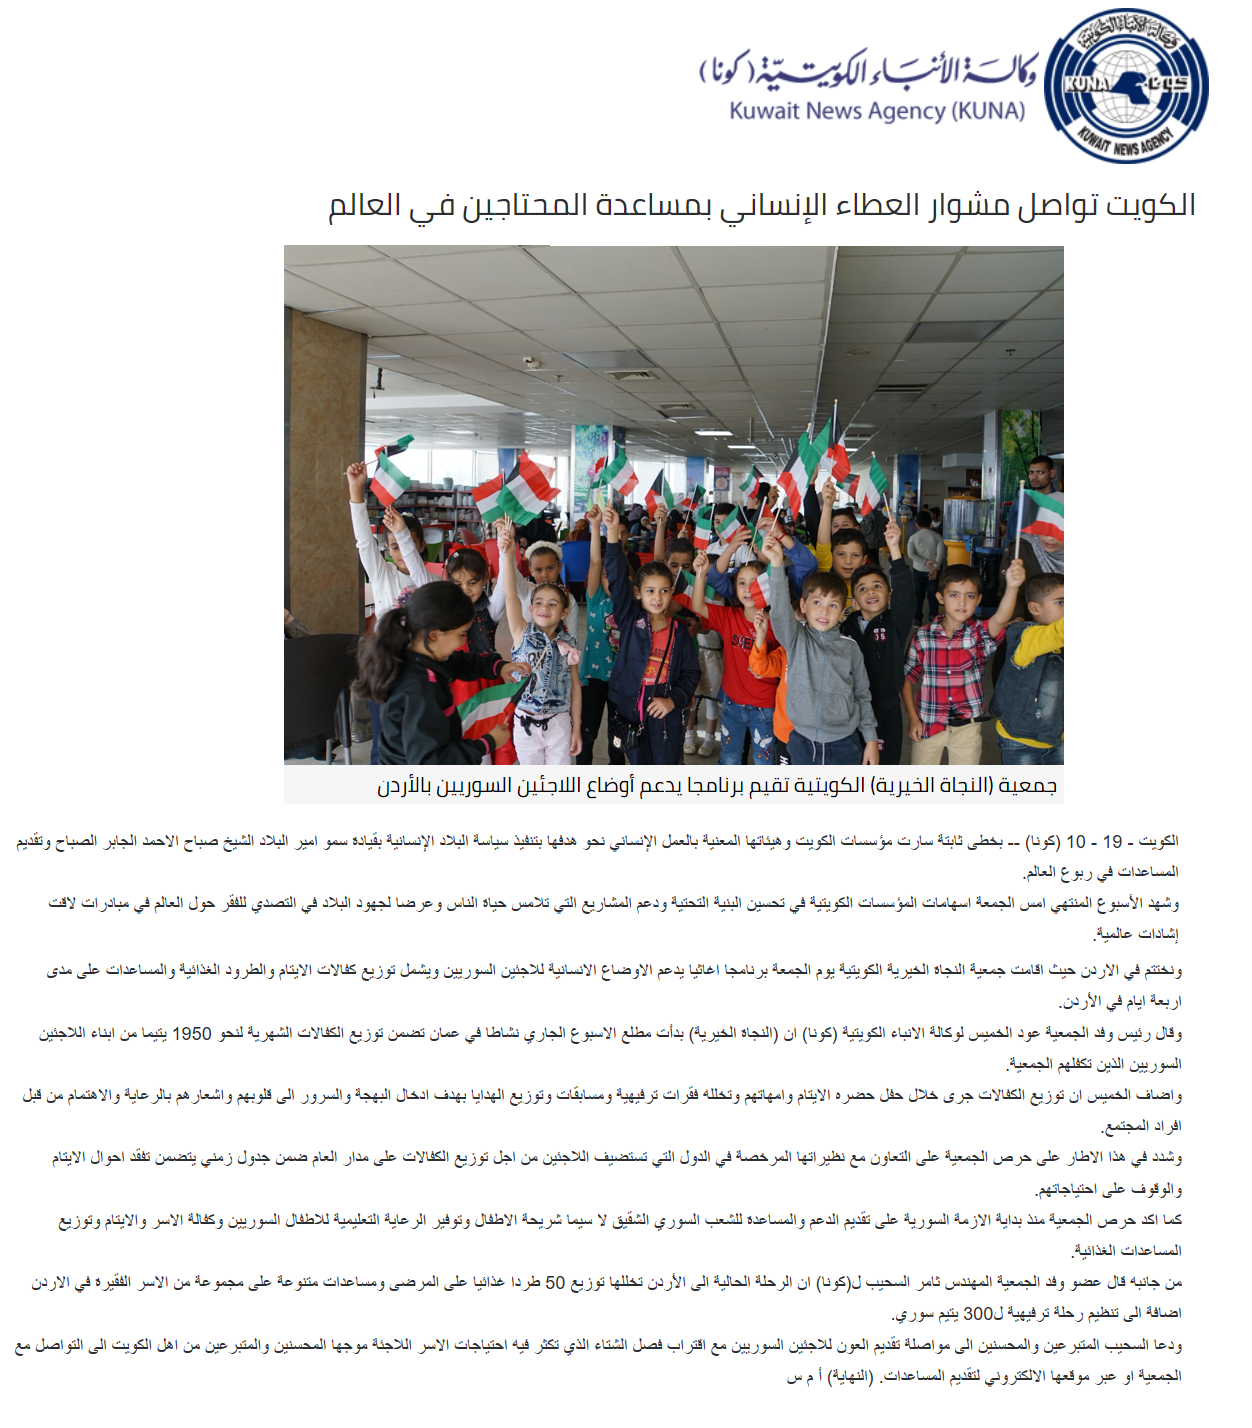 الكويت تواصل مشوار العطاء الإنساني بمساعدة المحتاجين في العالم